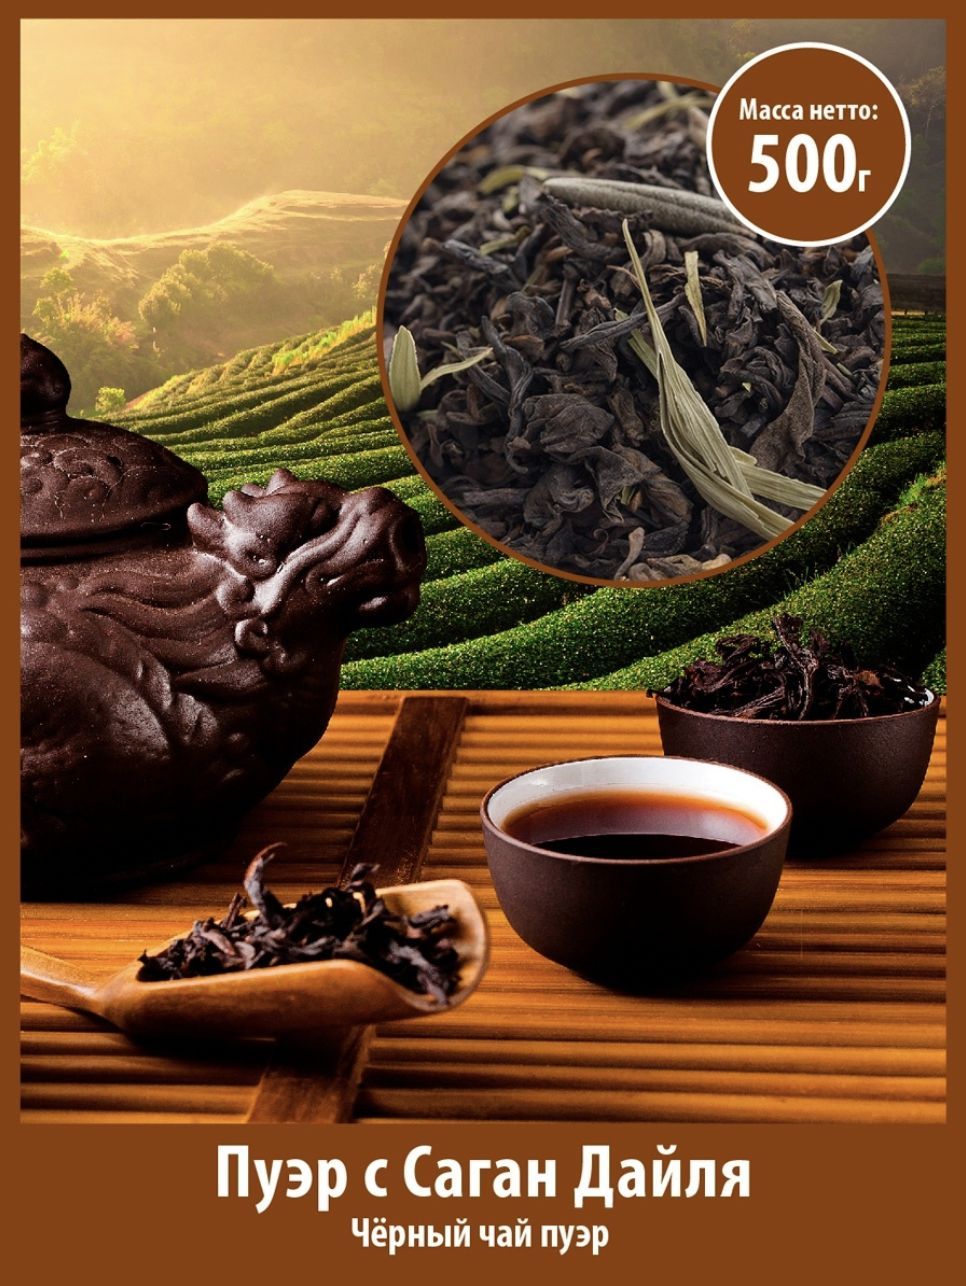 Пуэр состав. Шу пуэр чай Гун Тин. Gutenberg Гун Тин пуэр. Пуэр с Саган дайля. Элитный китайский чай пуэр.